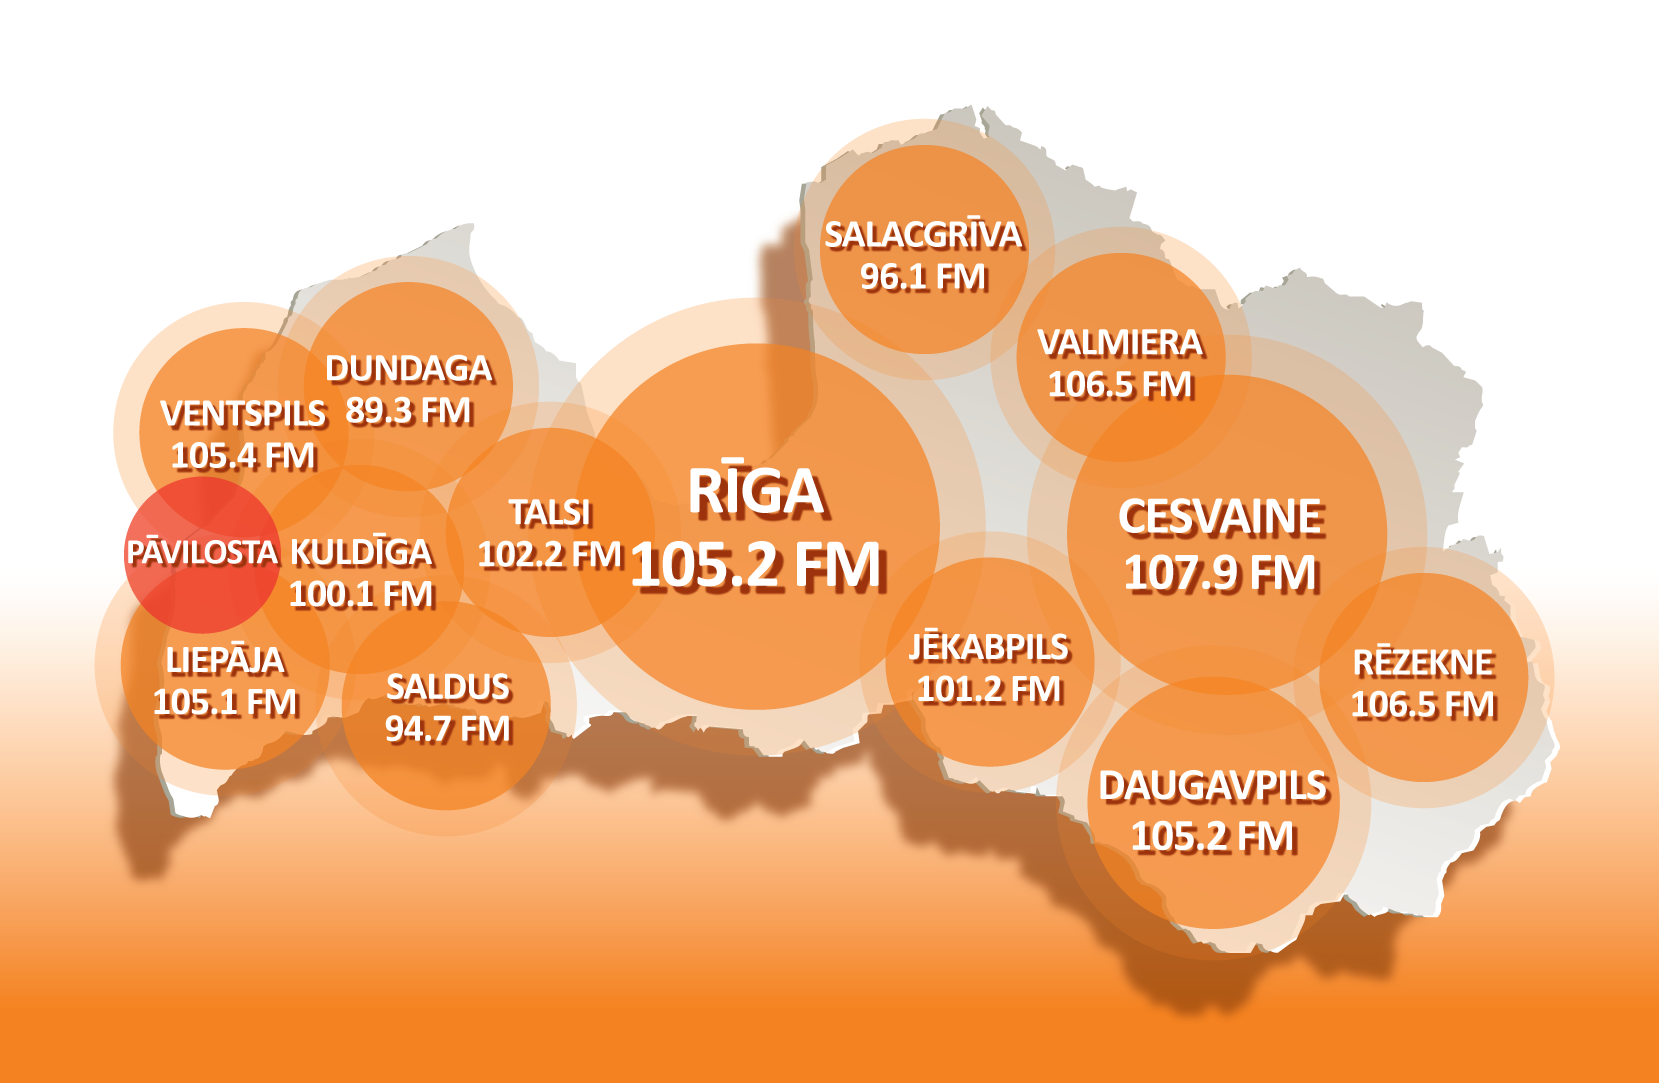 Radio SWH ir ieguvis frekvenci Pāvilostā!